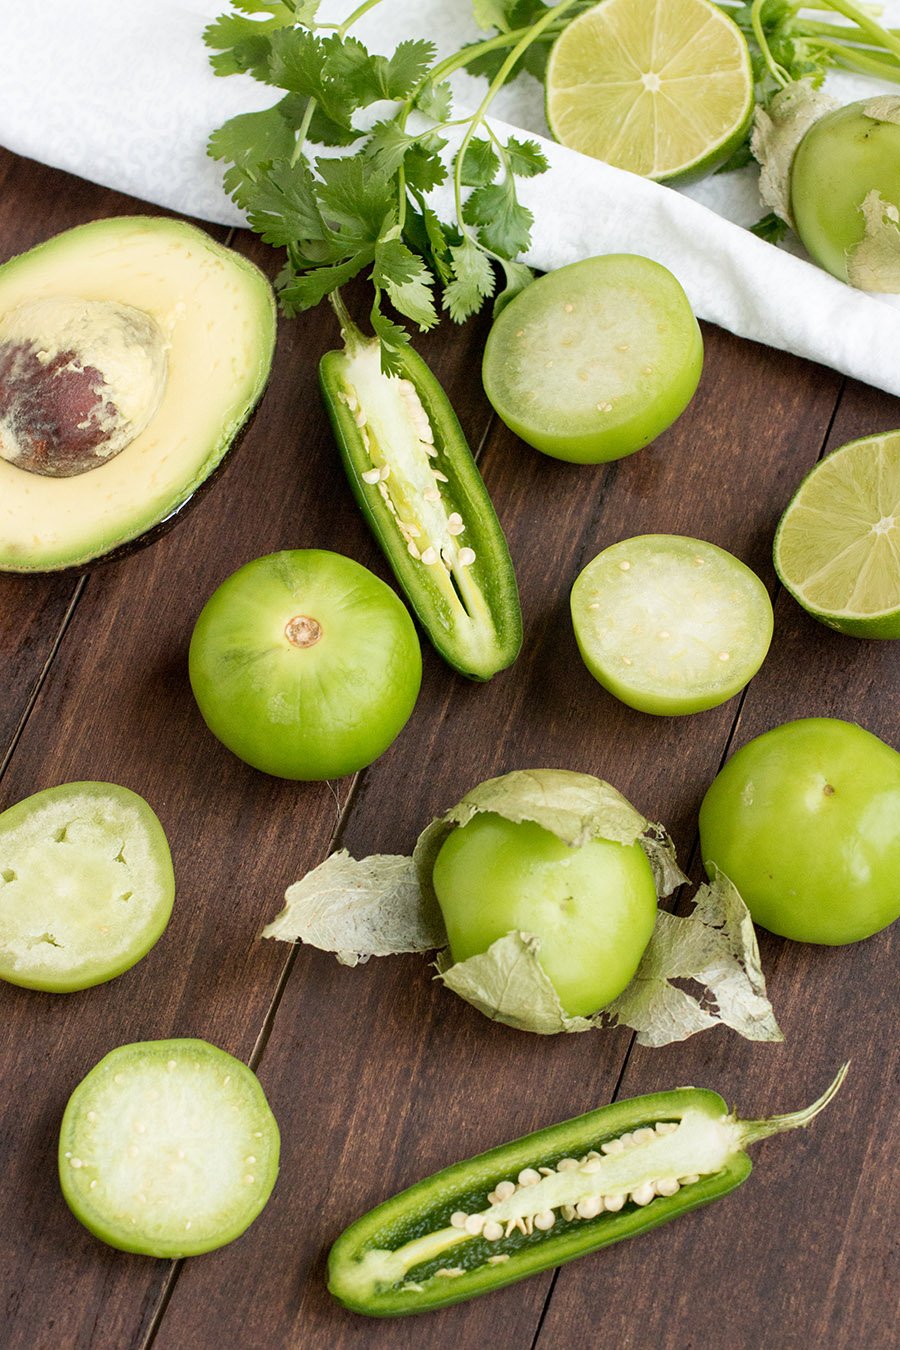 Avocado-Tomatillo Salsa Verde - Mexican Green Table Sauce - Recipe